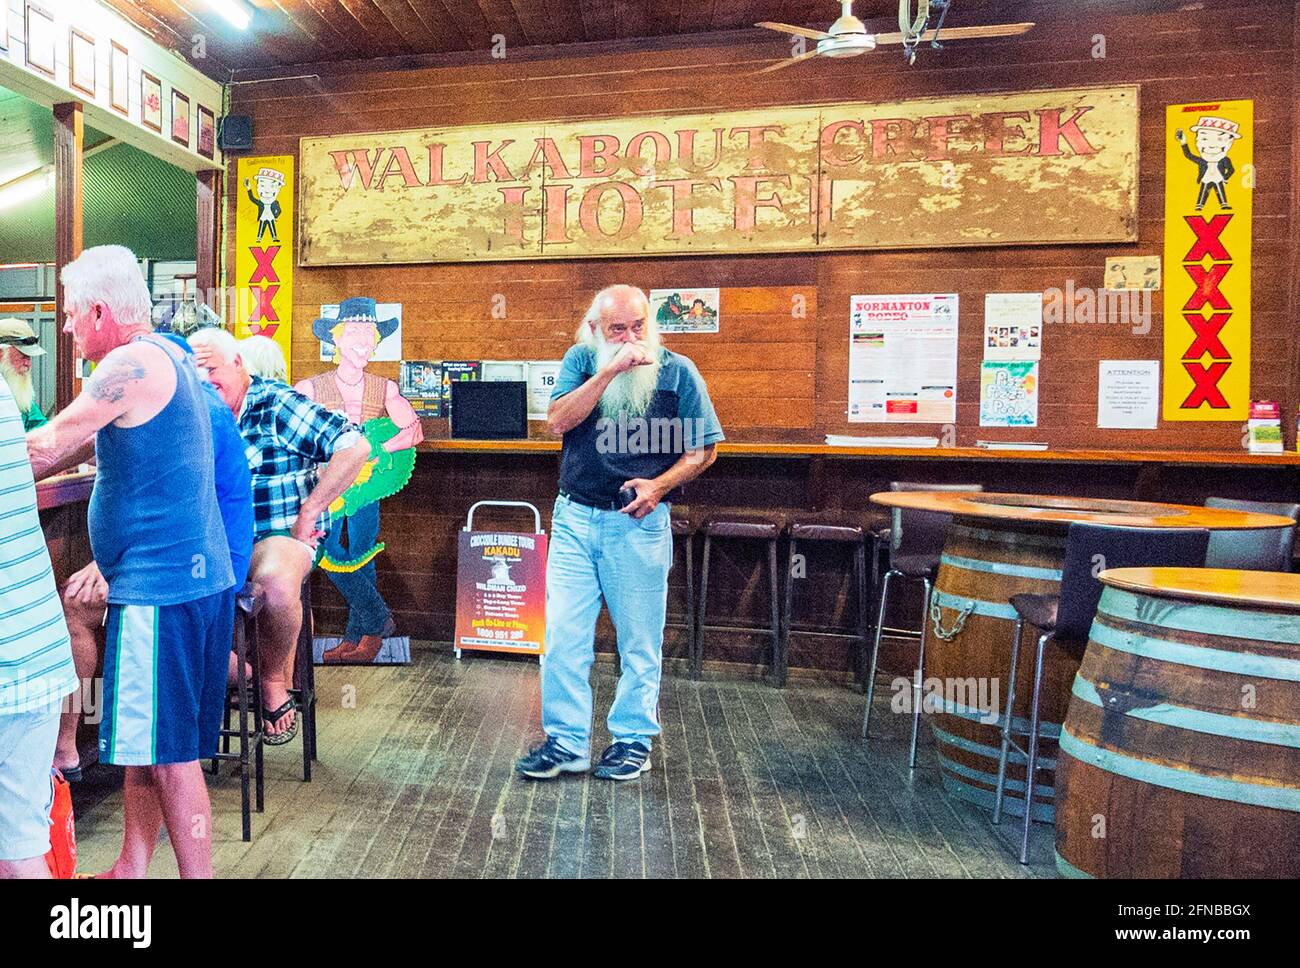 Uomo anziano con una lunga barba bianca all'interno del Walkabout Creek Hotel presentato nel film di Crocodile Dundee, McKinlay, Queensland, QLD, Australia. Foto Stock